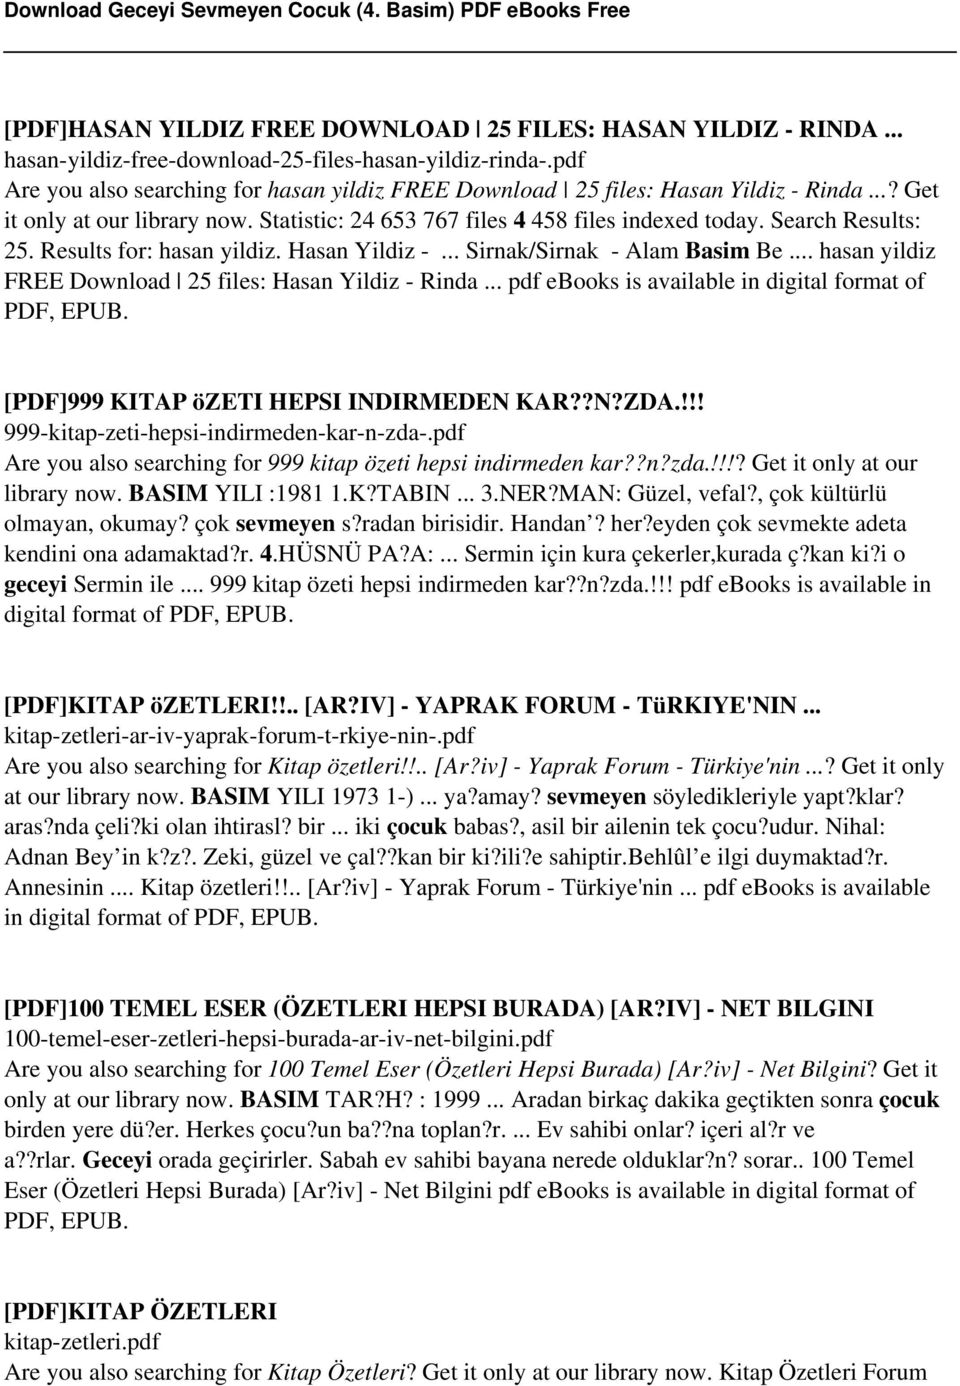 Results for: hasan yildiz. Hasan Yildiz -... Sirnak/Sirnak - Alam Basim Be... hasan yildiz FREE Download 25 files: Hasan Yildiz - Rinda... pdf ebooks is available in digital format of PDF, EPUB.